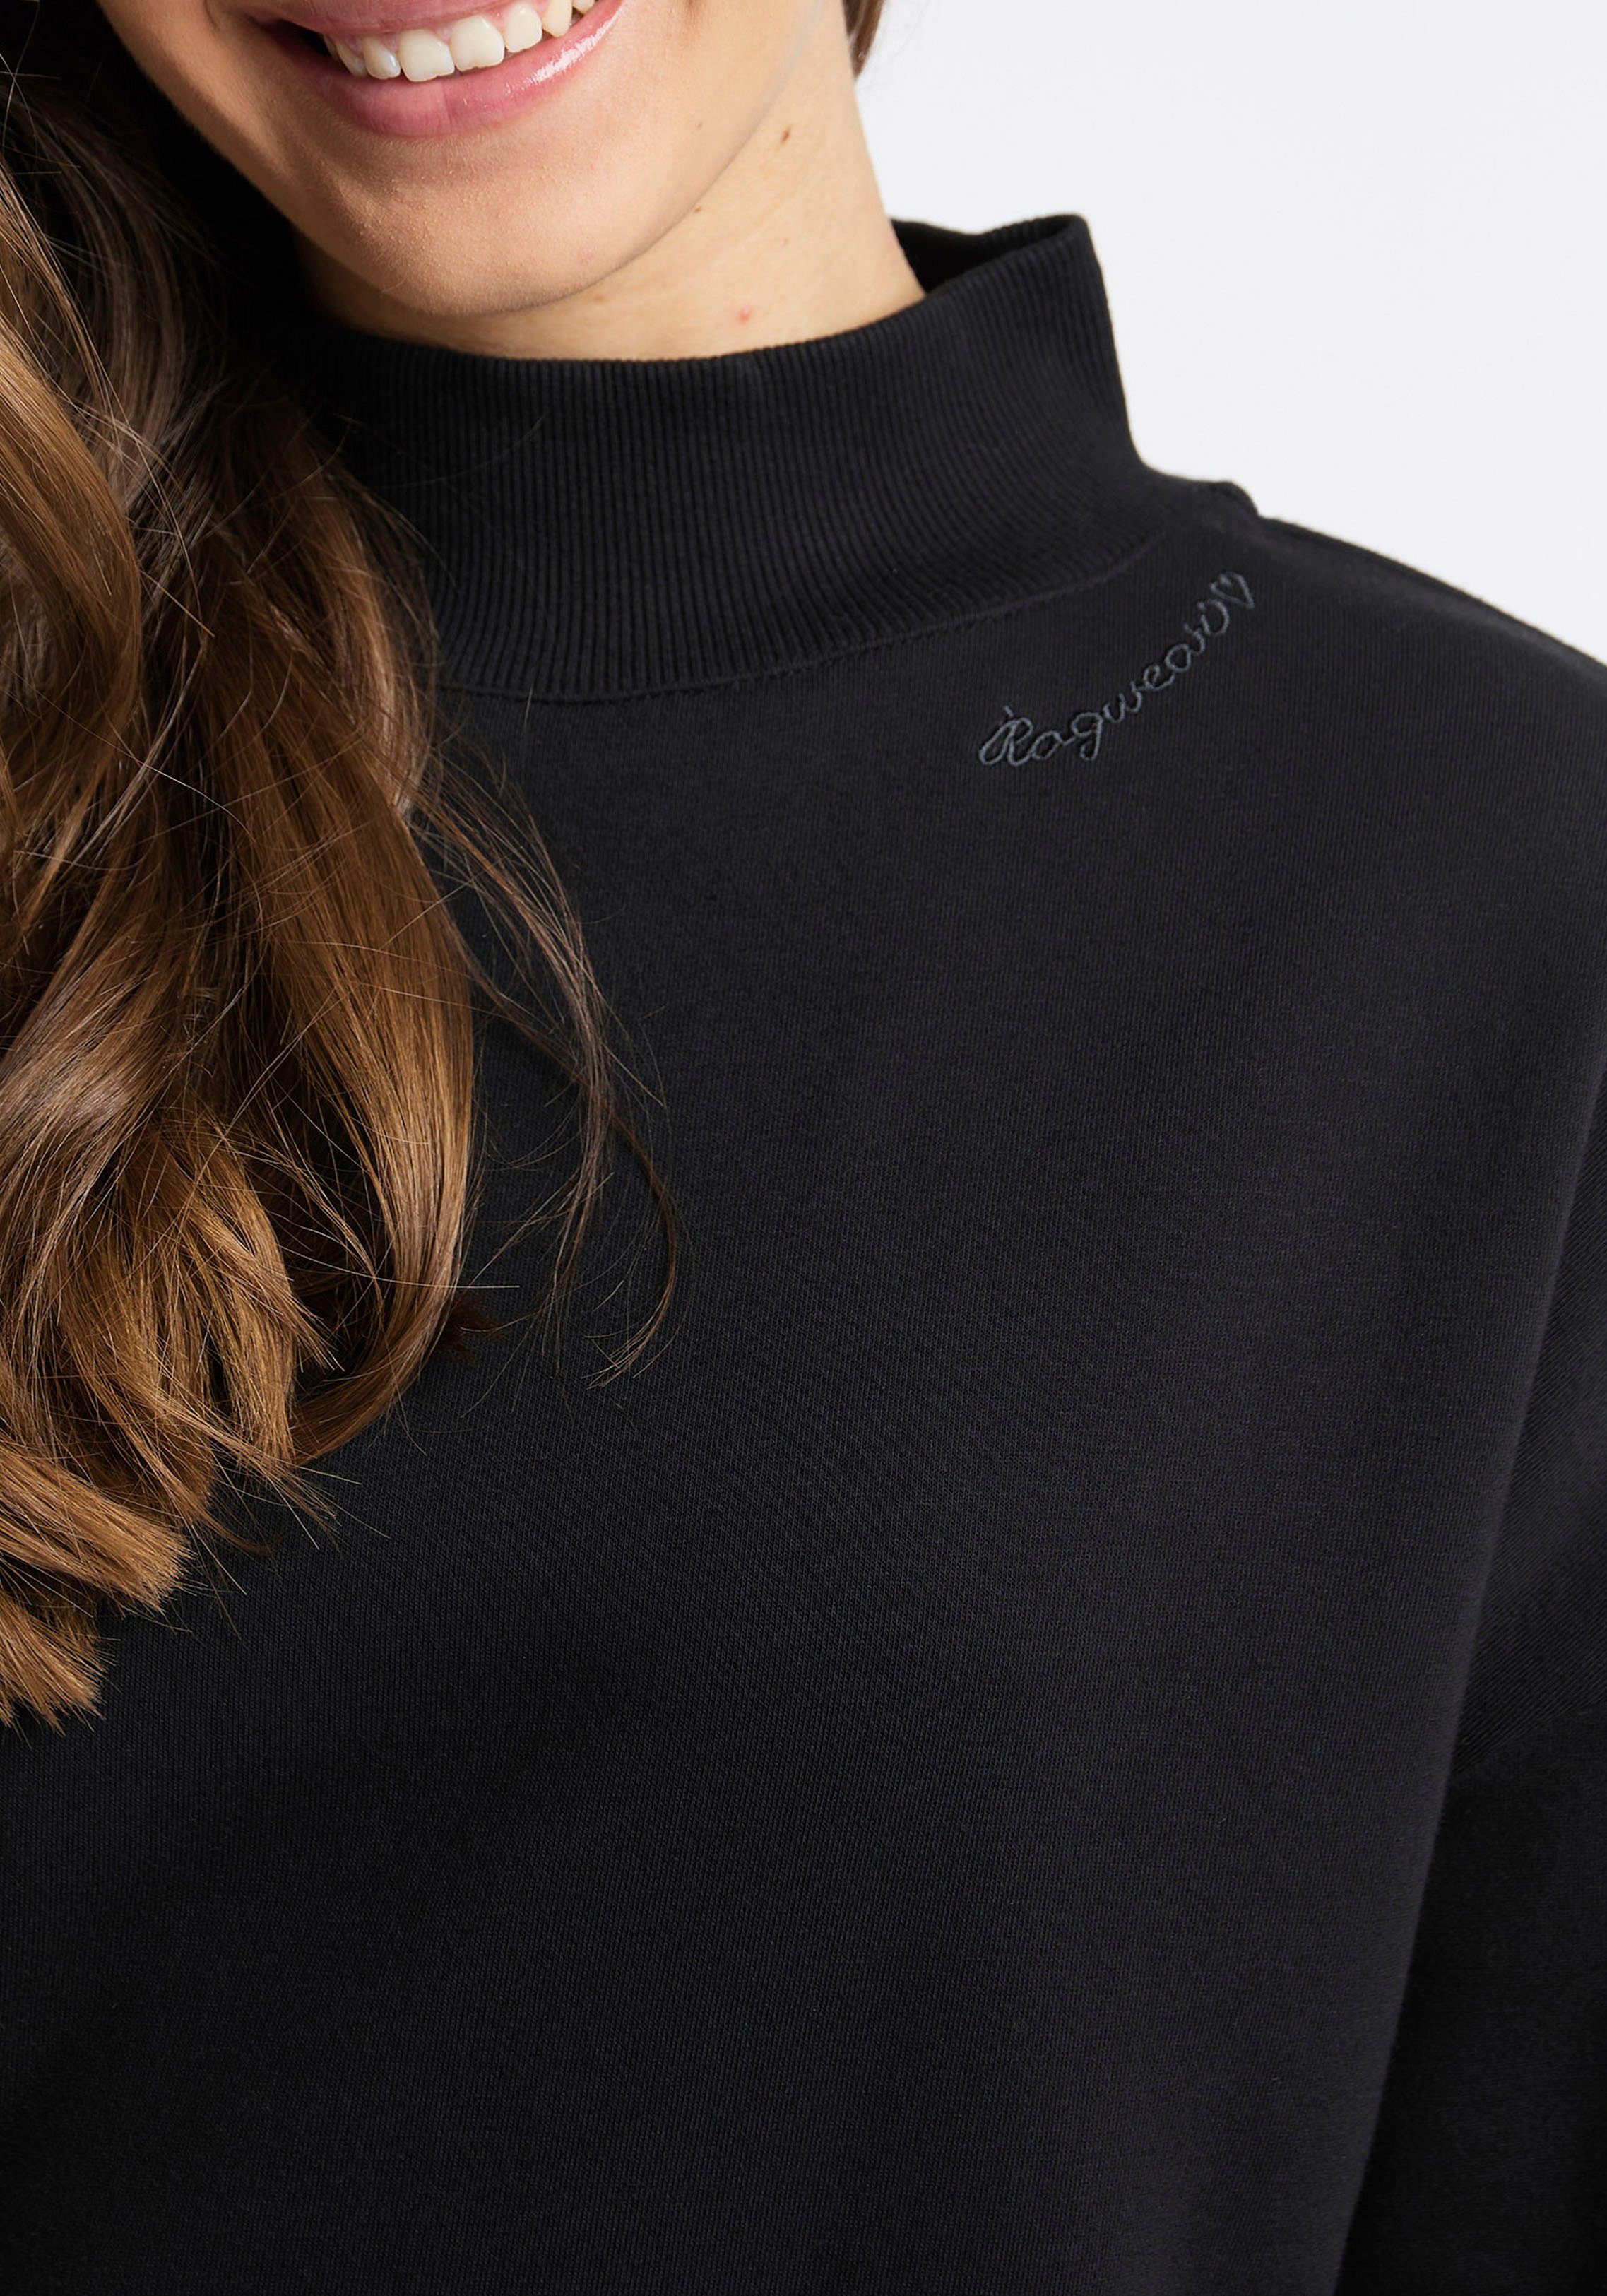 SWEAT 1010 Sweater black KAILA Ragwear